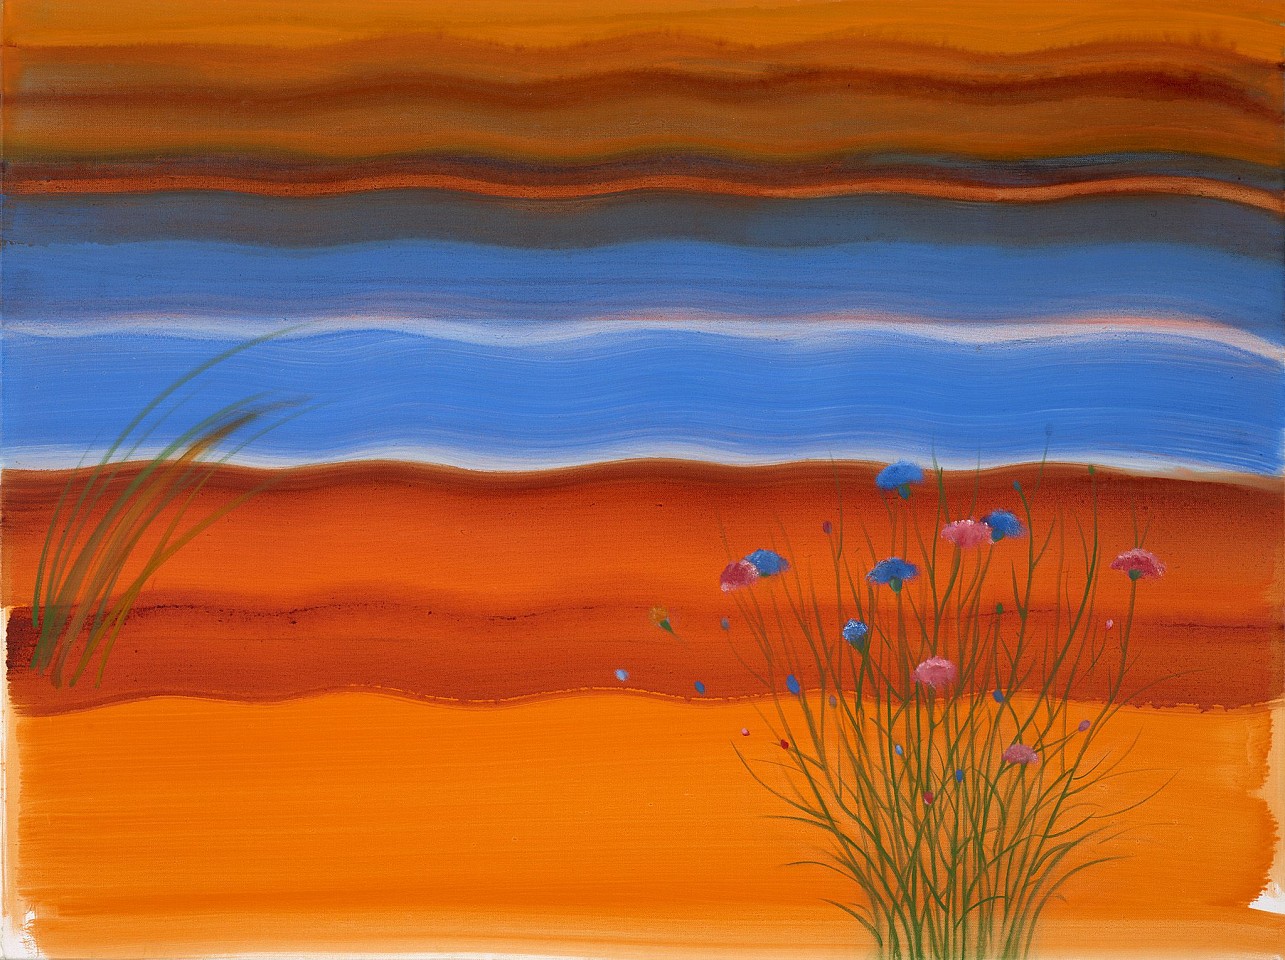 Elizabeth Osborne, Autumn Sea, 2020
Oil on canvas, 36 x 47 3/4 in. (91.4 x 121.3 cm)
OSB-00492